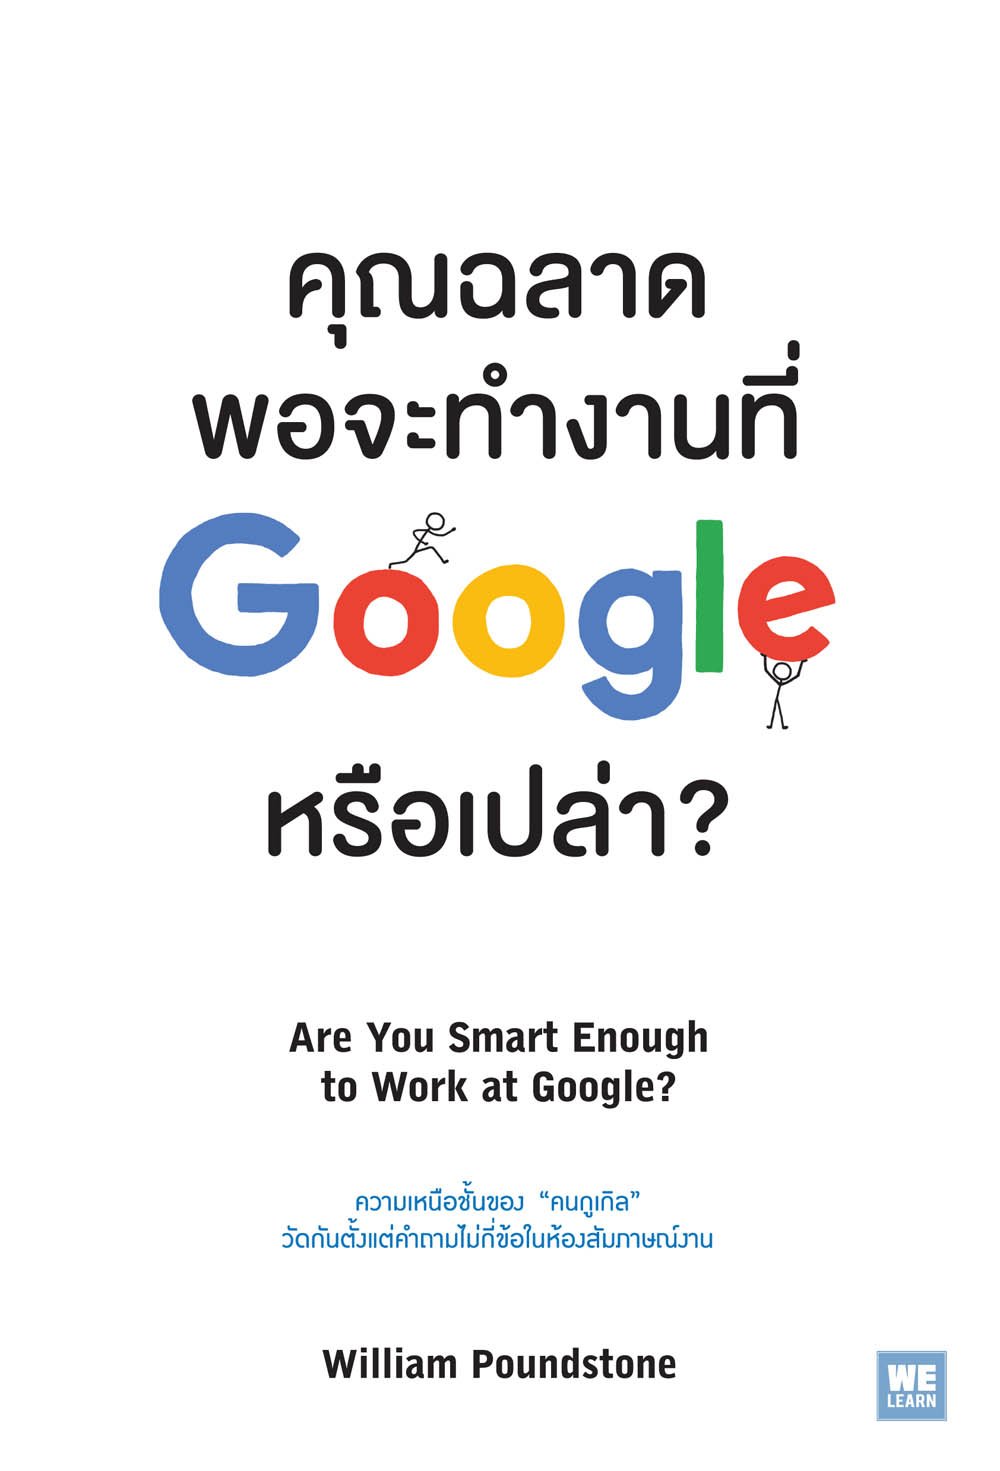 คุณฉลาดพอจะทำงานที่ Google หรือเปล่า?  (Are You Smart Enough to Work at Google?)